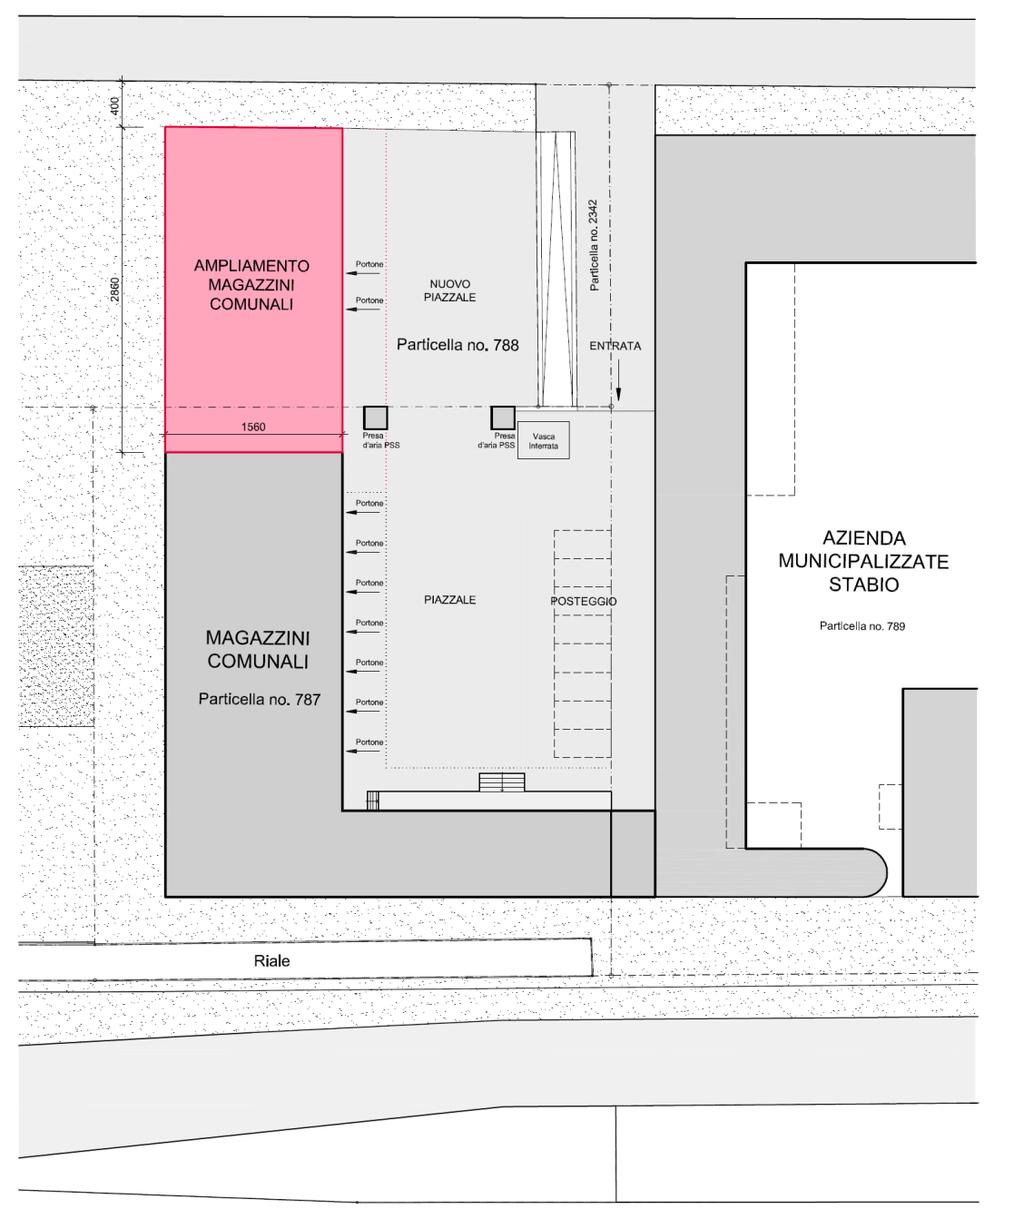 2. Planimetria ampliamento magazzini comunali Inizialmente prevedevamo l ampliamento dei magazzini comunali oggi esistenti.